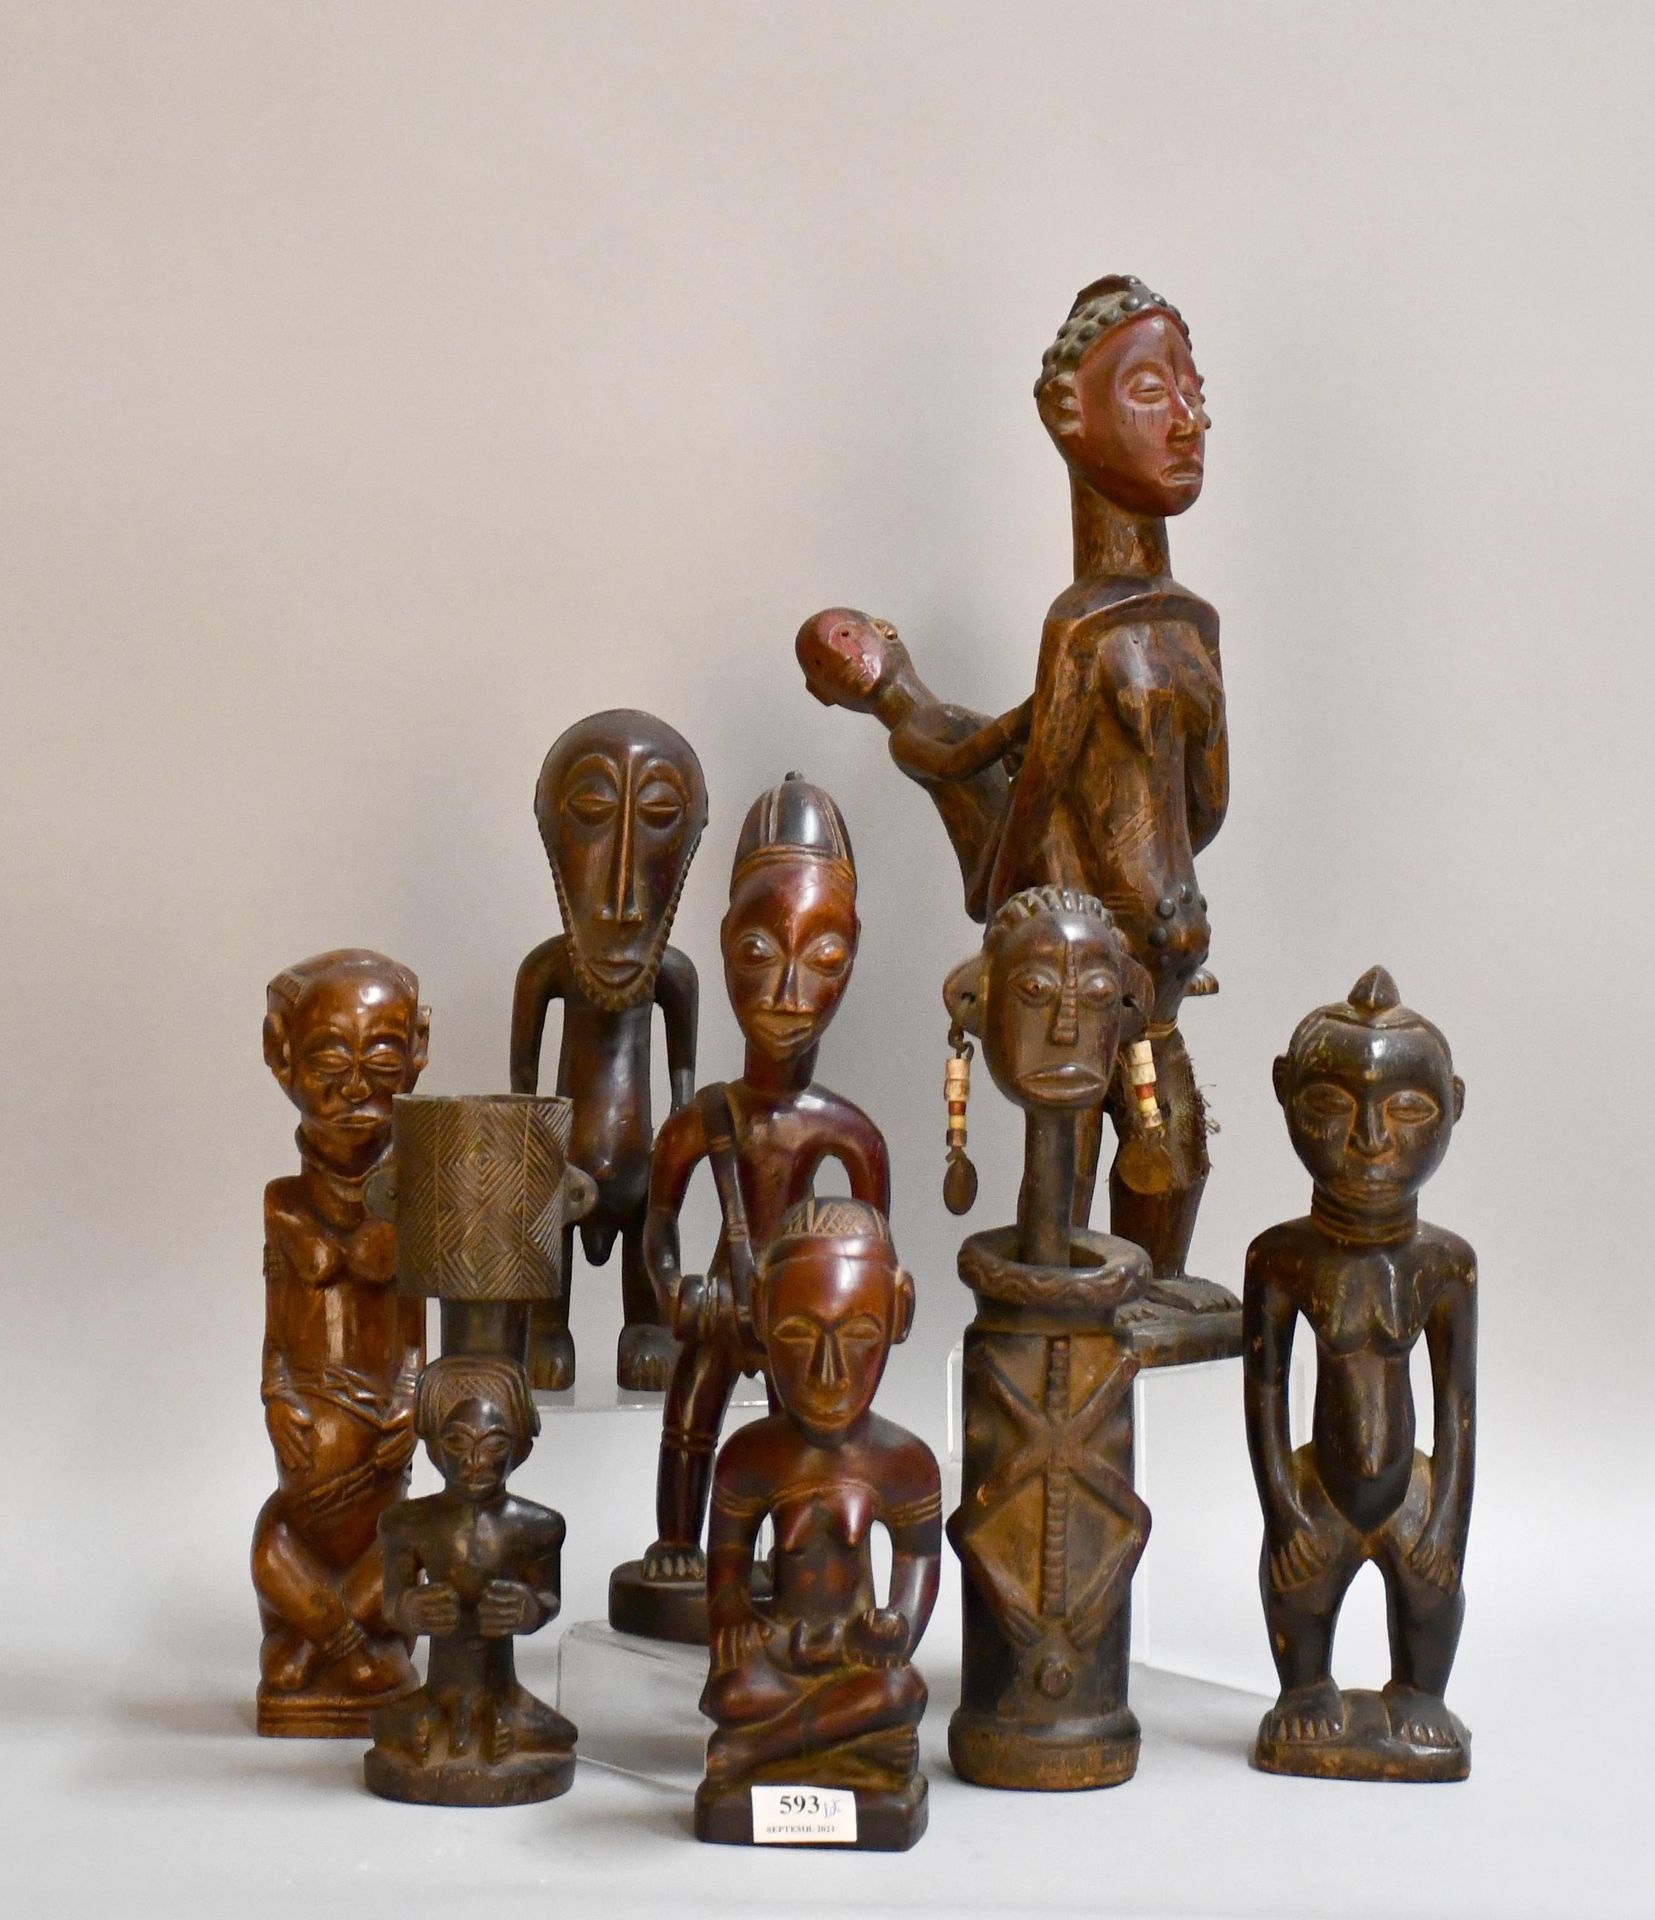 Null Africana

Viele afrikanische Fetische aus geschnitztem Holz.